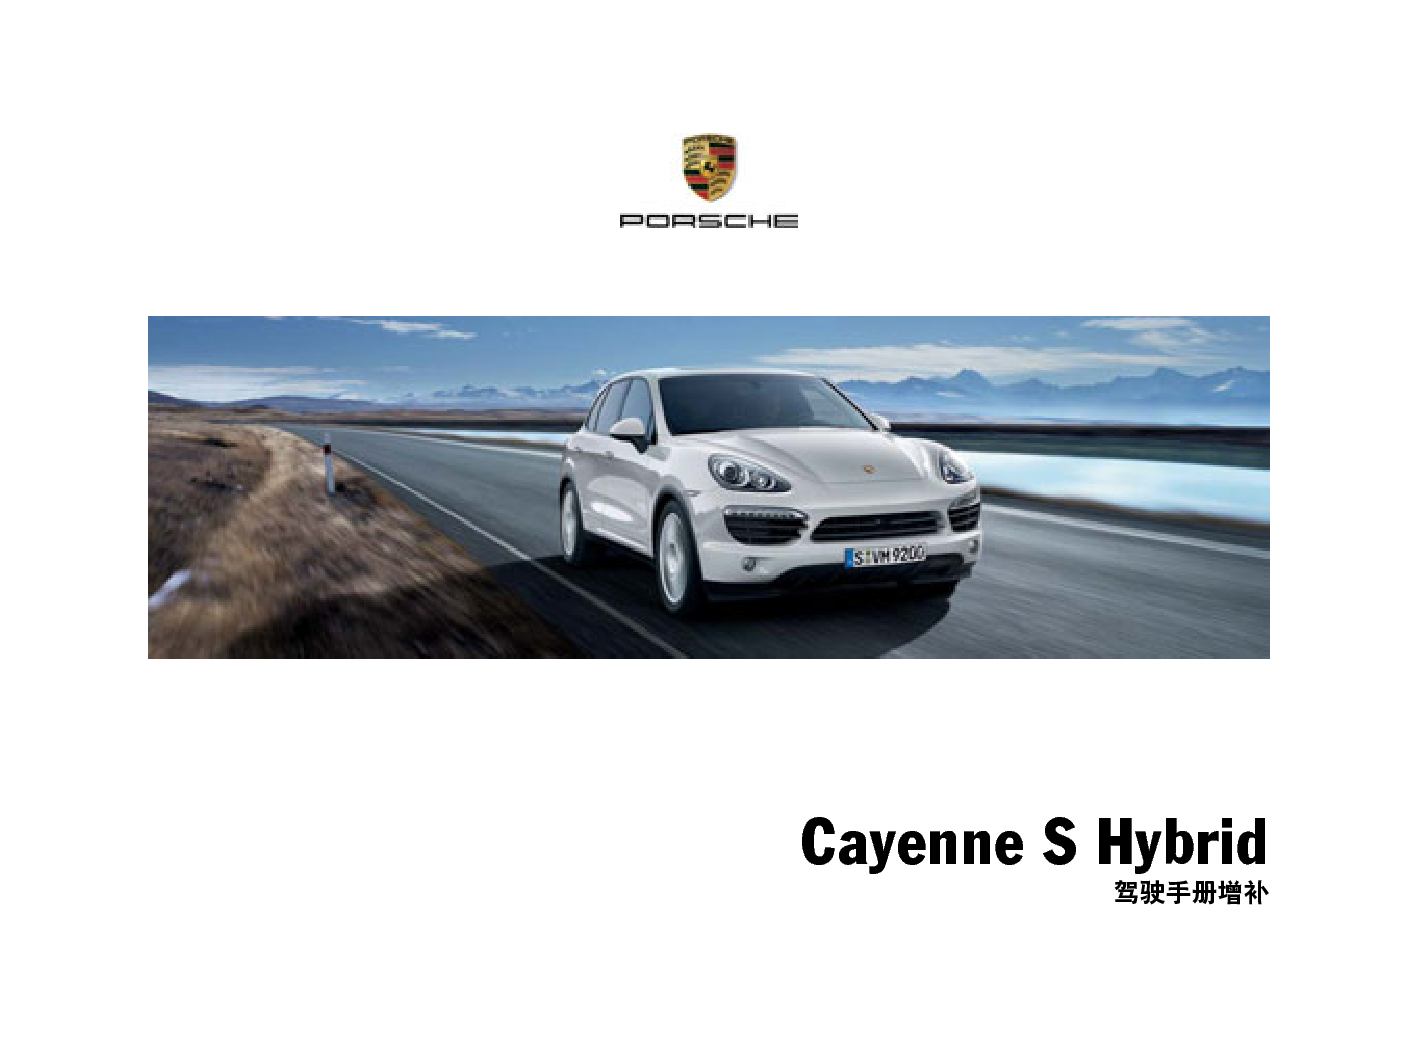 保时捷 Porsche Cayenne S Hybrid 02/2010增补 使用说明书 封面